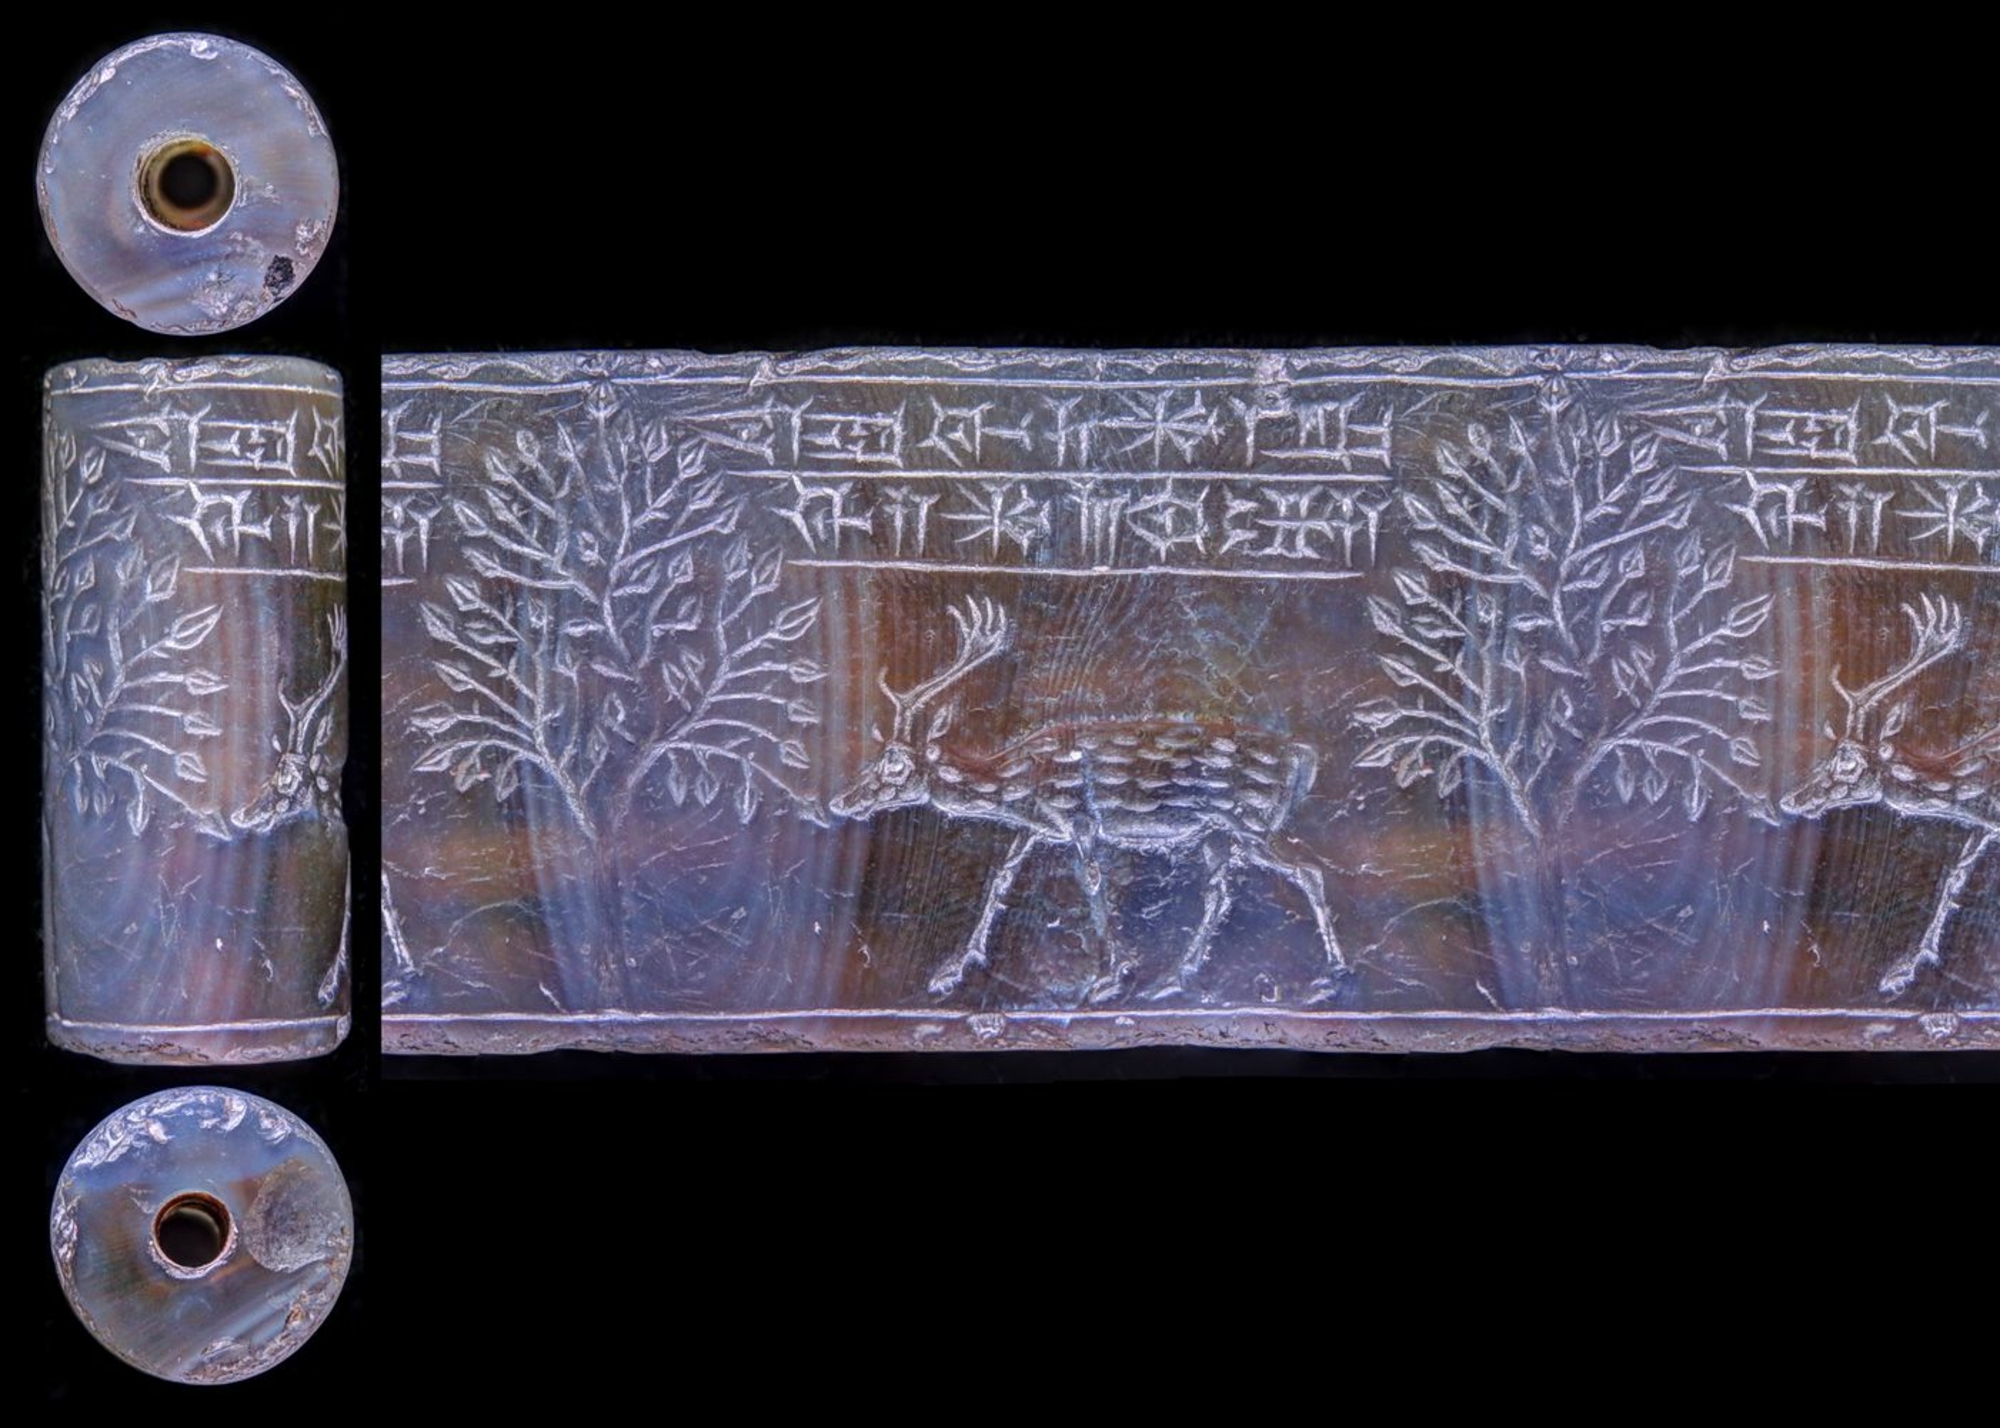 Un daim broute les feuilles d'un arbre. Au-dessus de lui: une inscription de 2 lignes: “Sceau de Ashur-remanni, fils de Mushezib-Ashur”